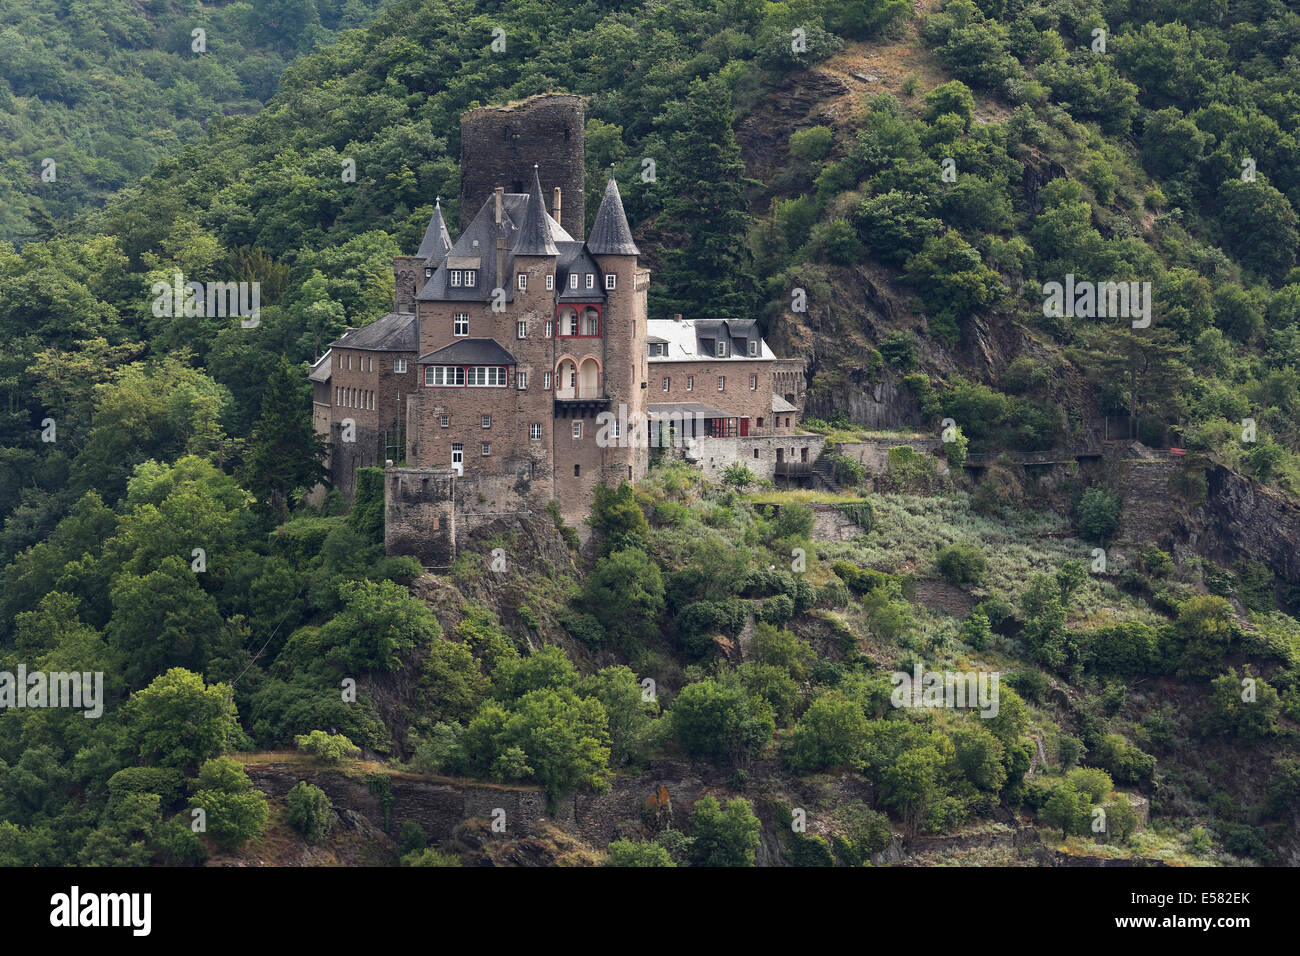 Burh Katz castle, St. Goarshausen, Unesco World Heritage Upper Middle Rhine Valley, Rhineland-Palatinate, Germany Stock Photo